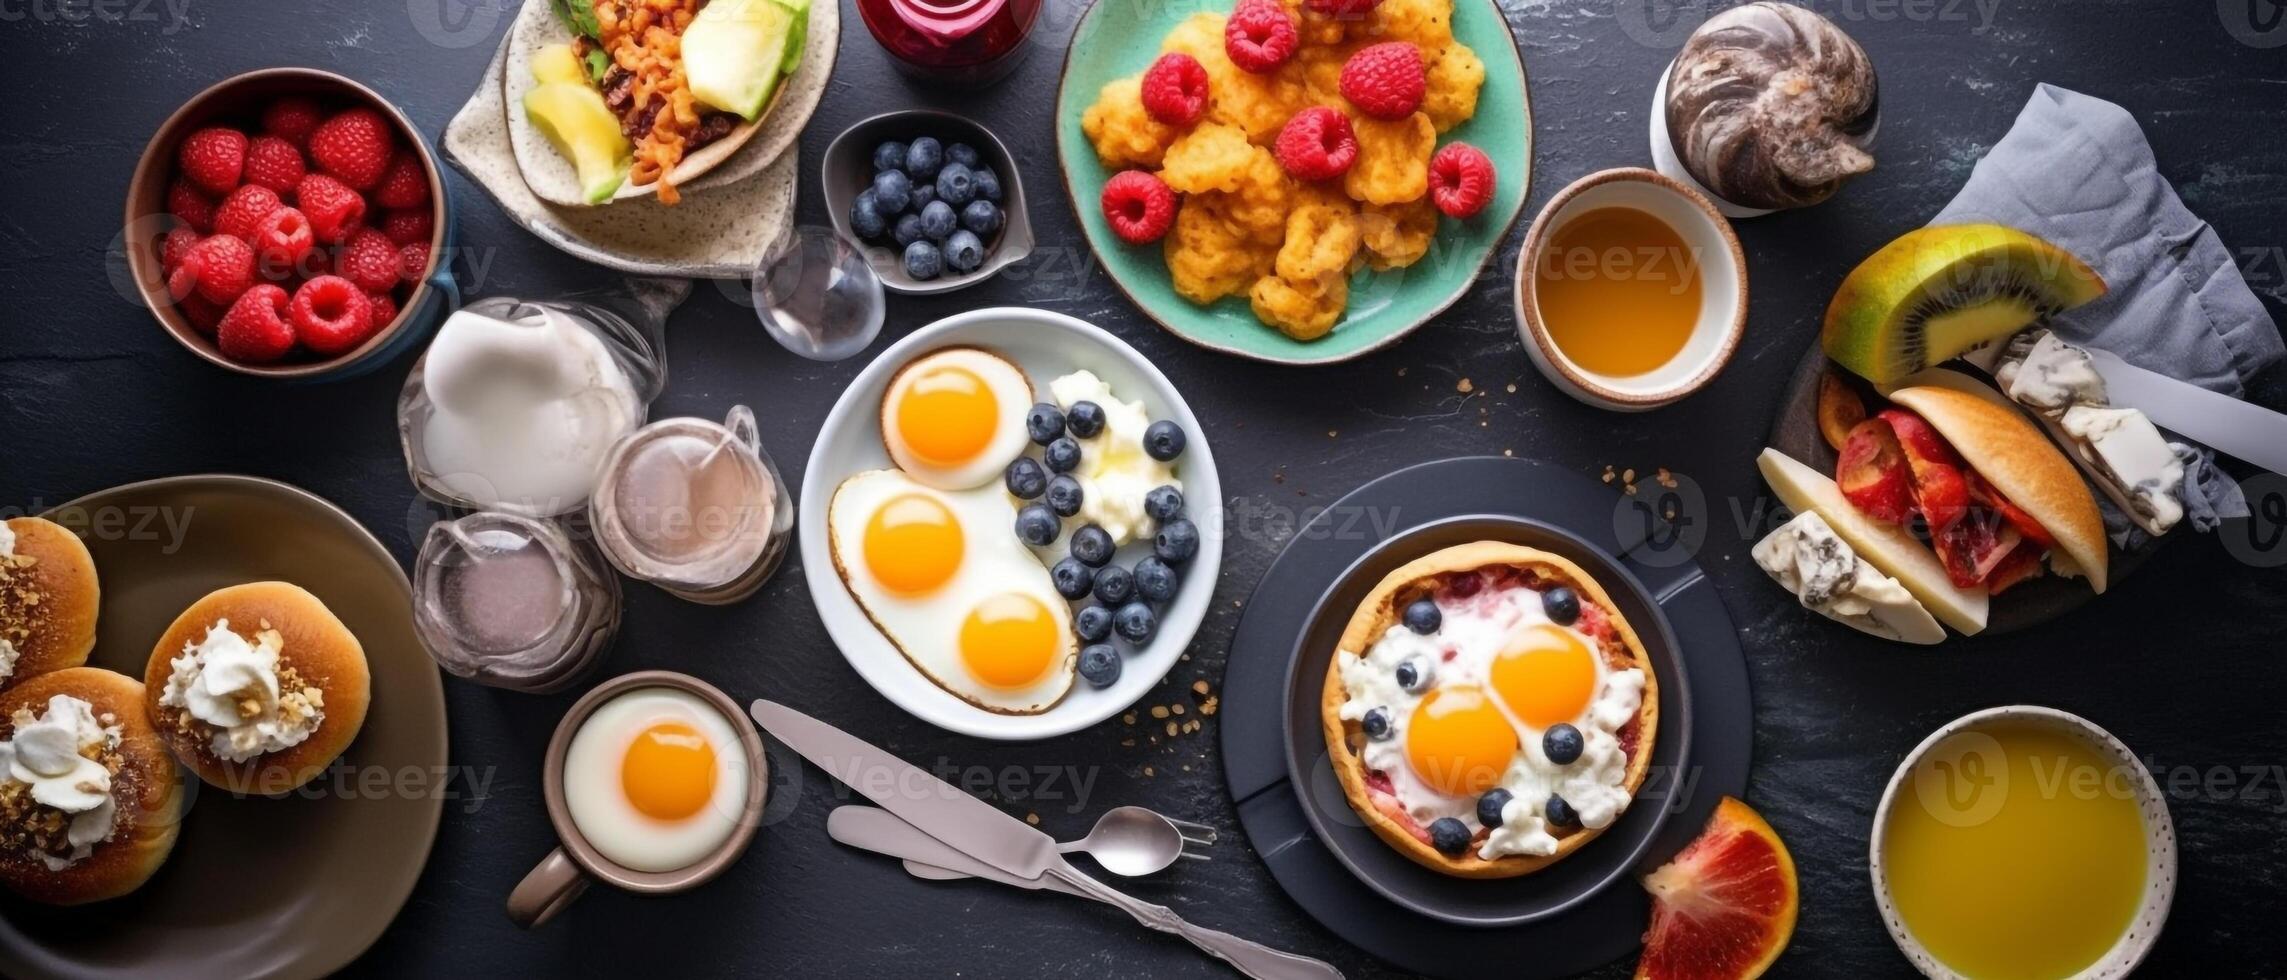 Ensembles petit-déjeuner pour embellir votre cuisine